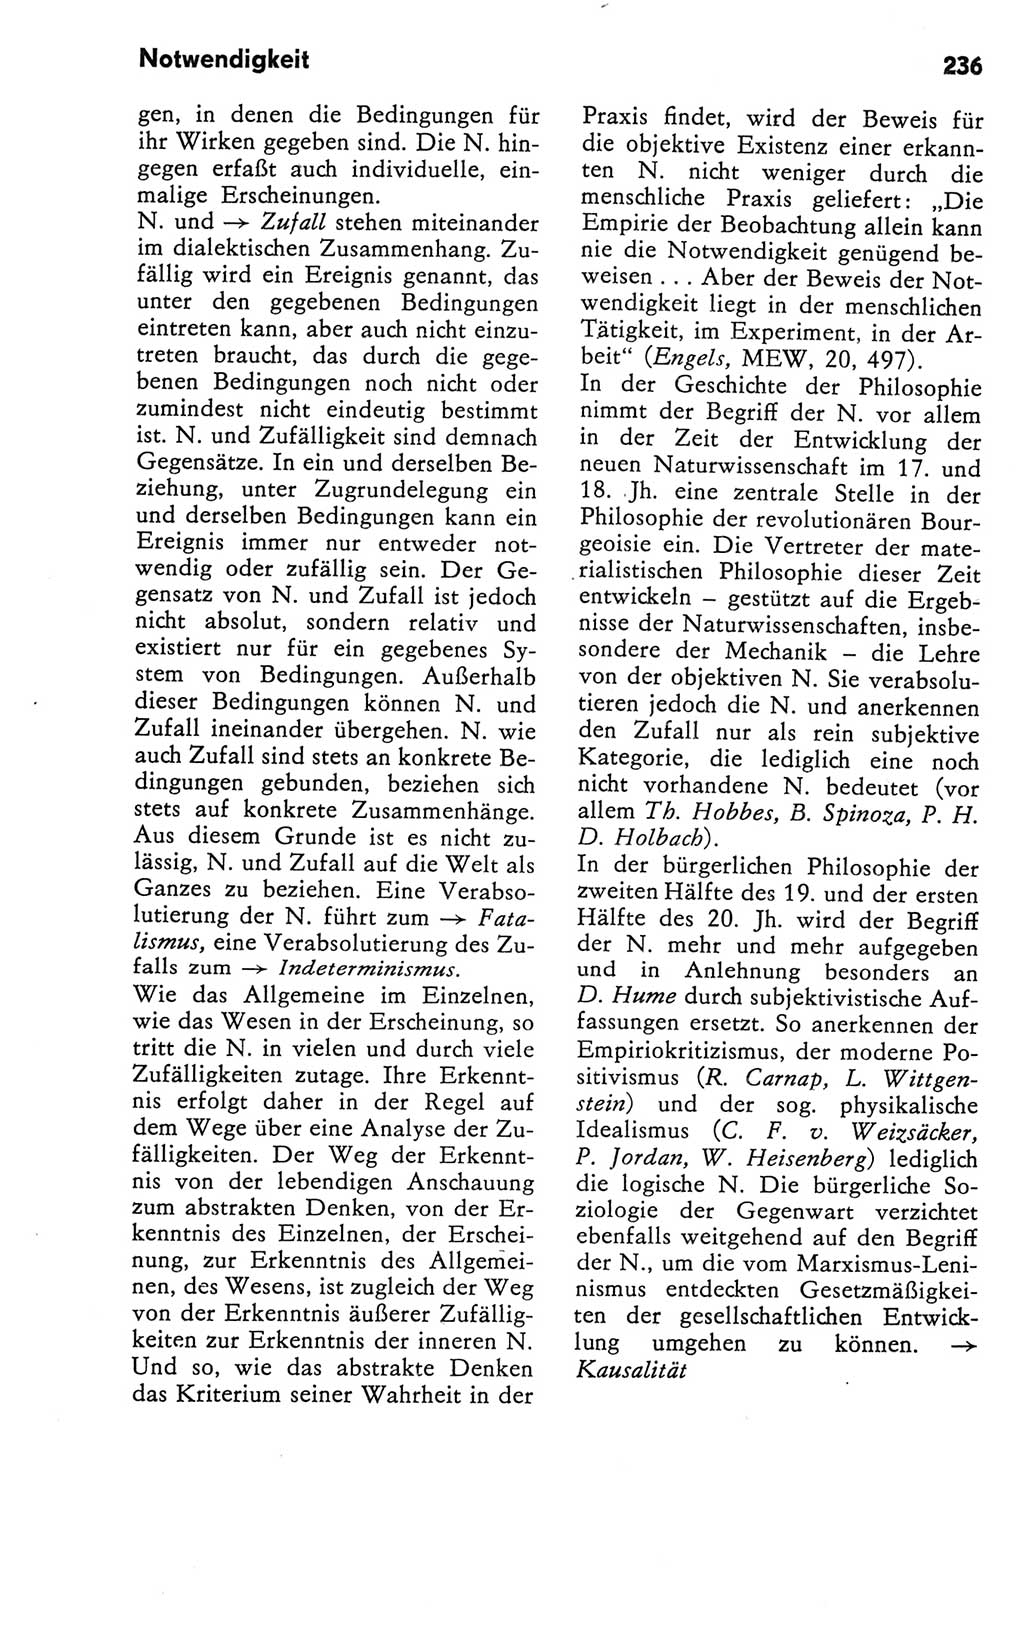 Kleines Wörterbuch der marxistisch-leninistischen Philosophie [Deutsche Demokratische Republik (DDR)] 1981, Seite 236 (Kl. Wb. ML Phil. DDR 1981, S. 236)